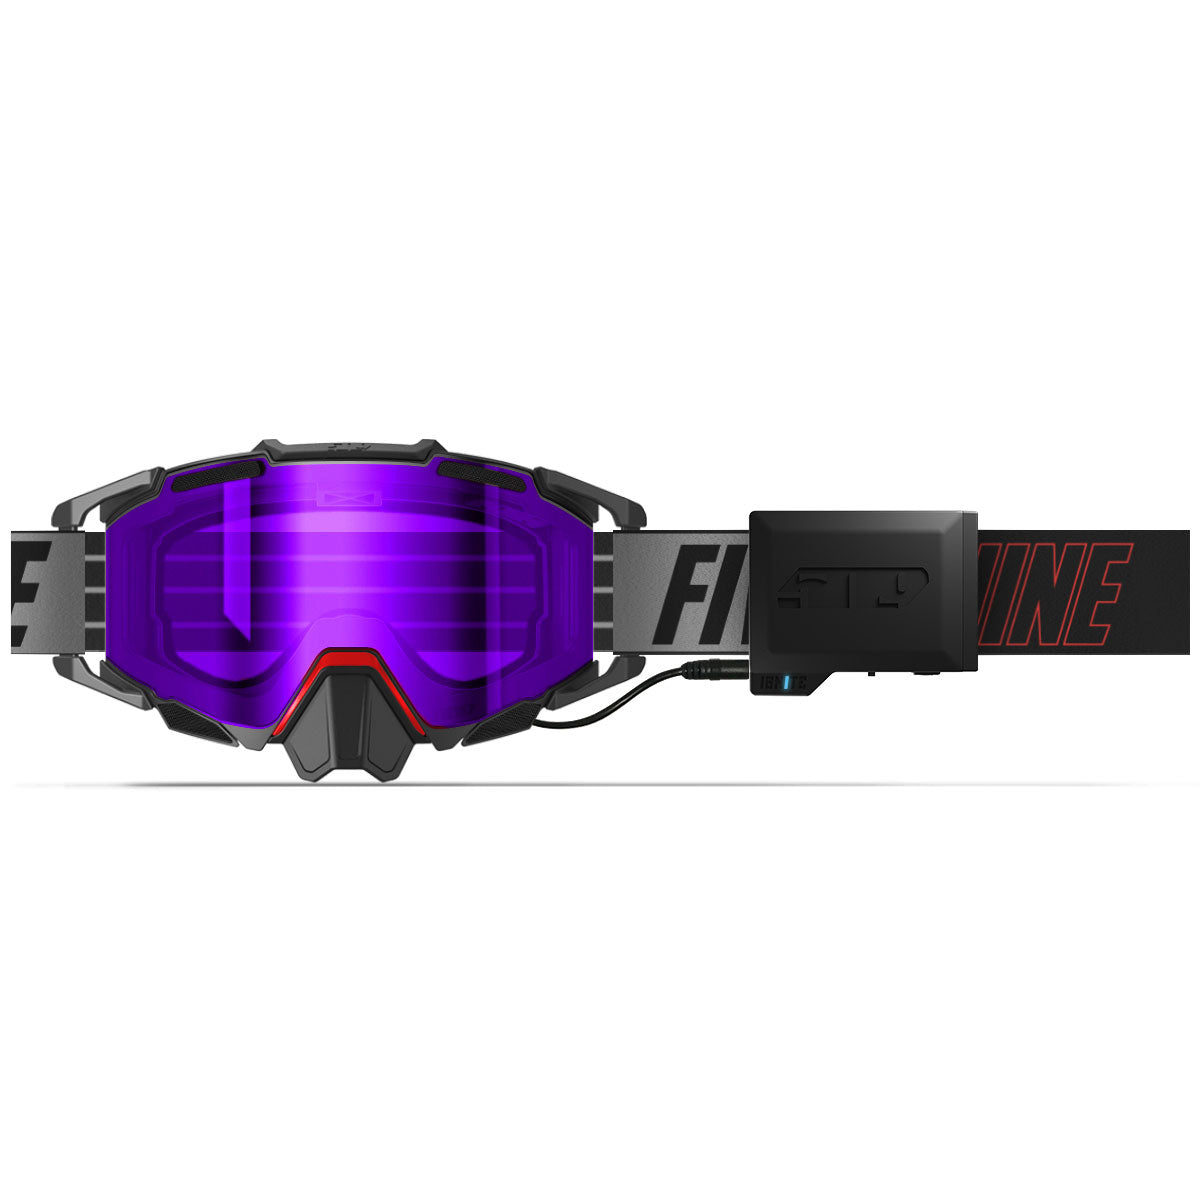 Sinister X7 Ignite S1 Goggle – 509